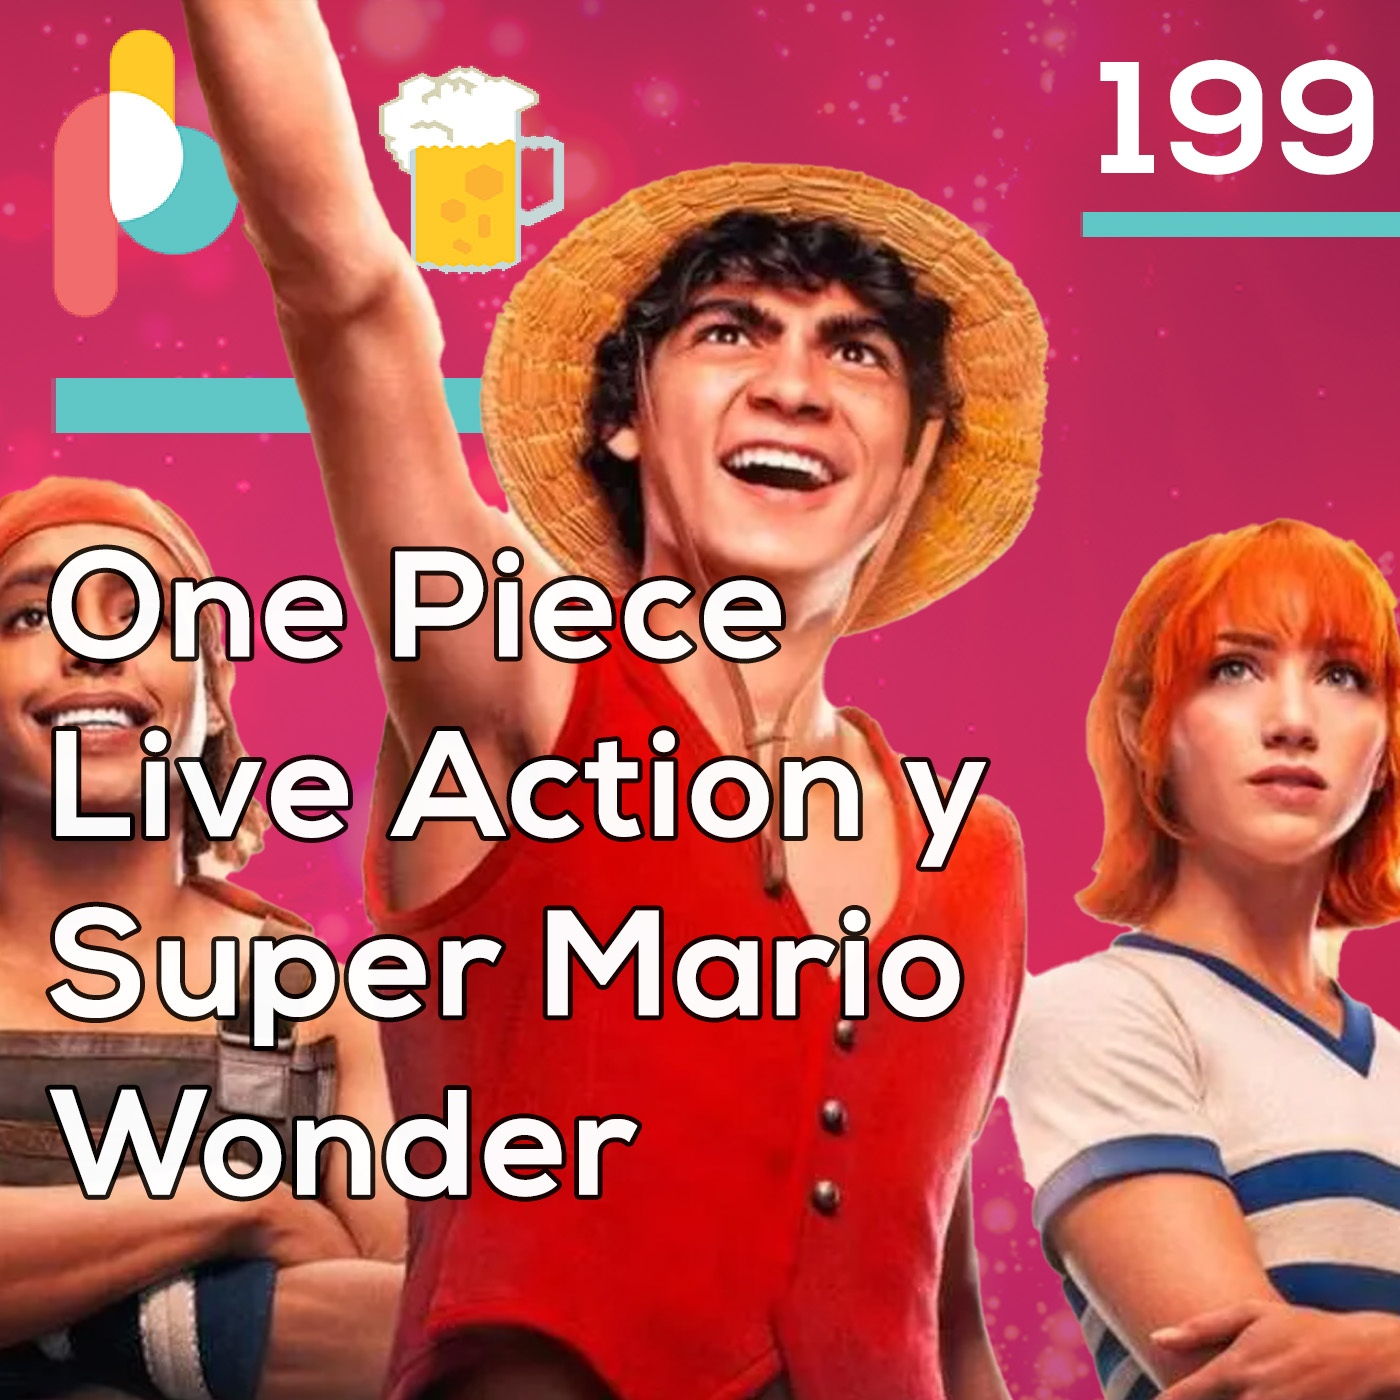 Pixelbits con cerveza 199: Netflix lo logró con el Live Action de One Piece? + Super Mario Wonder